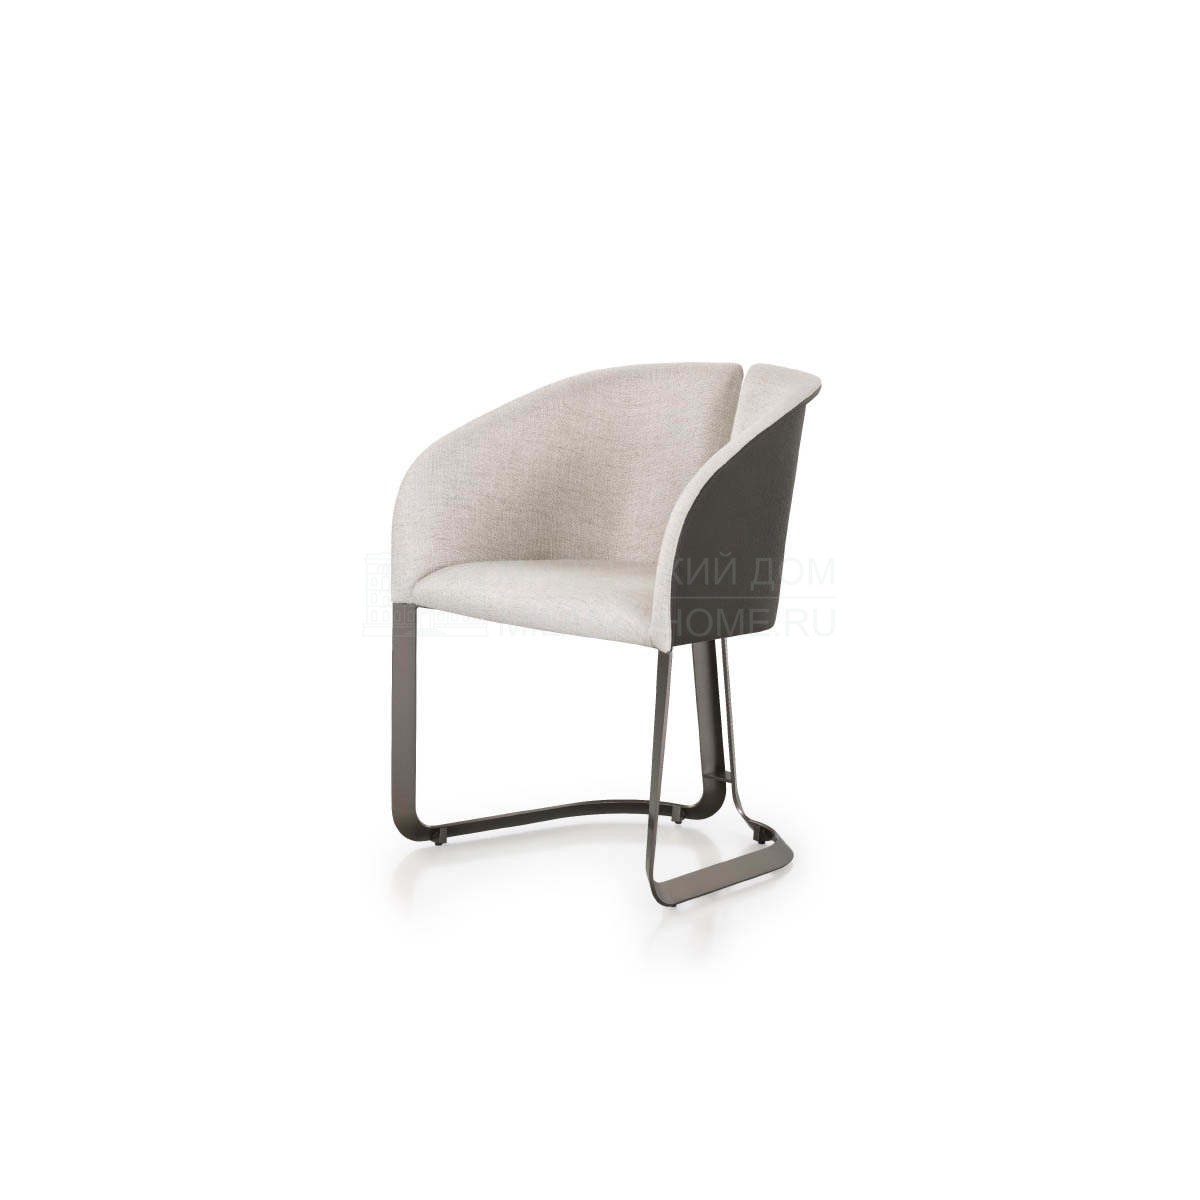 Полукресло Milano chair из Италии фабрики TURRI